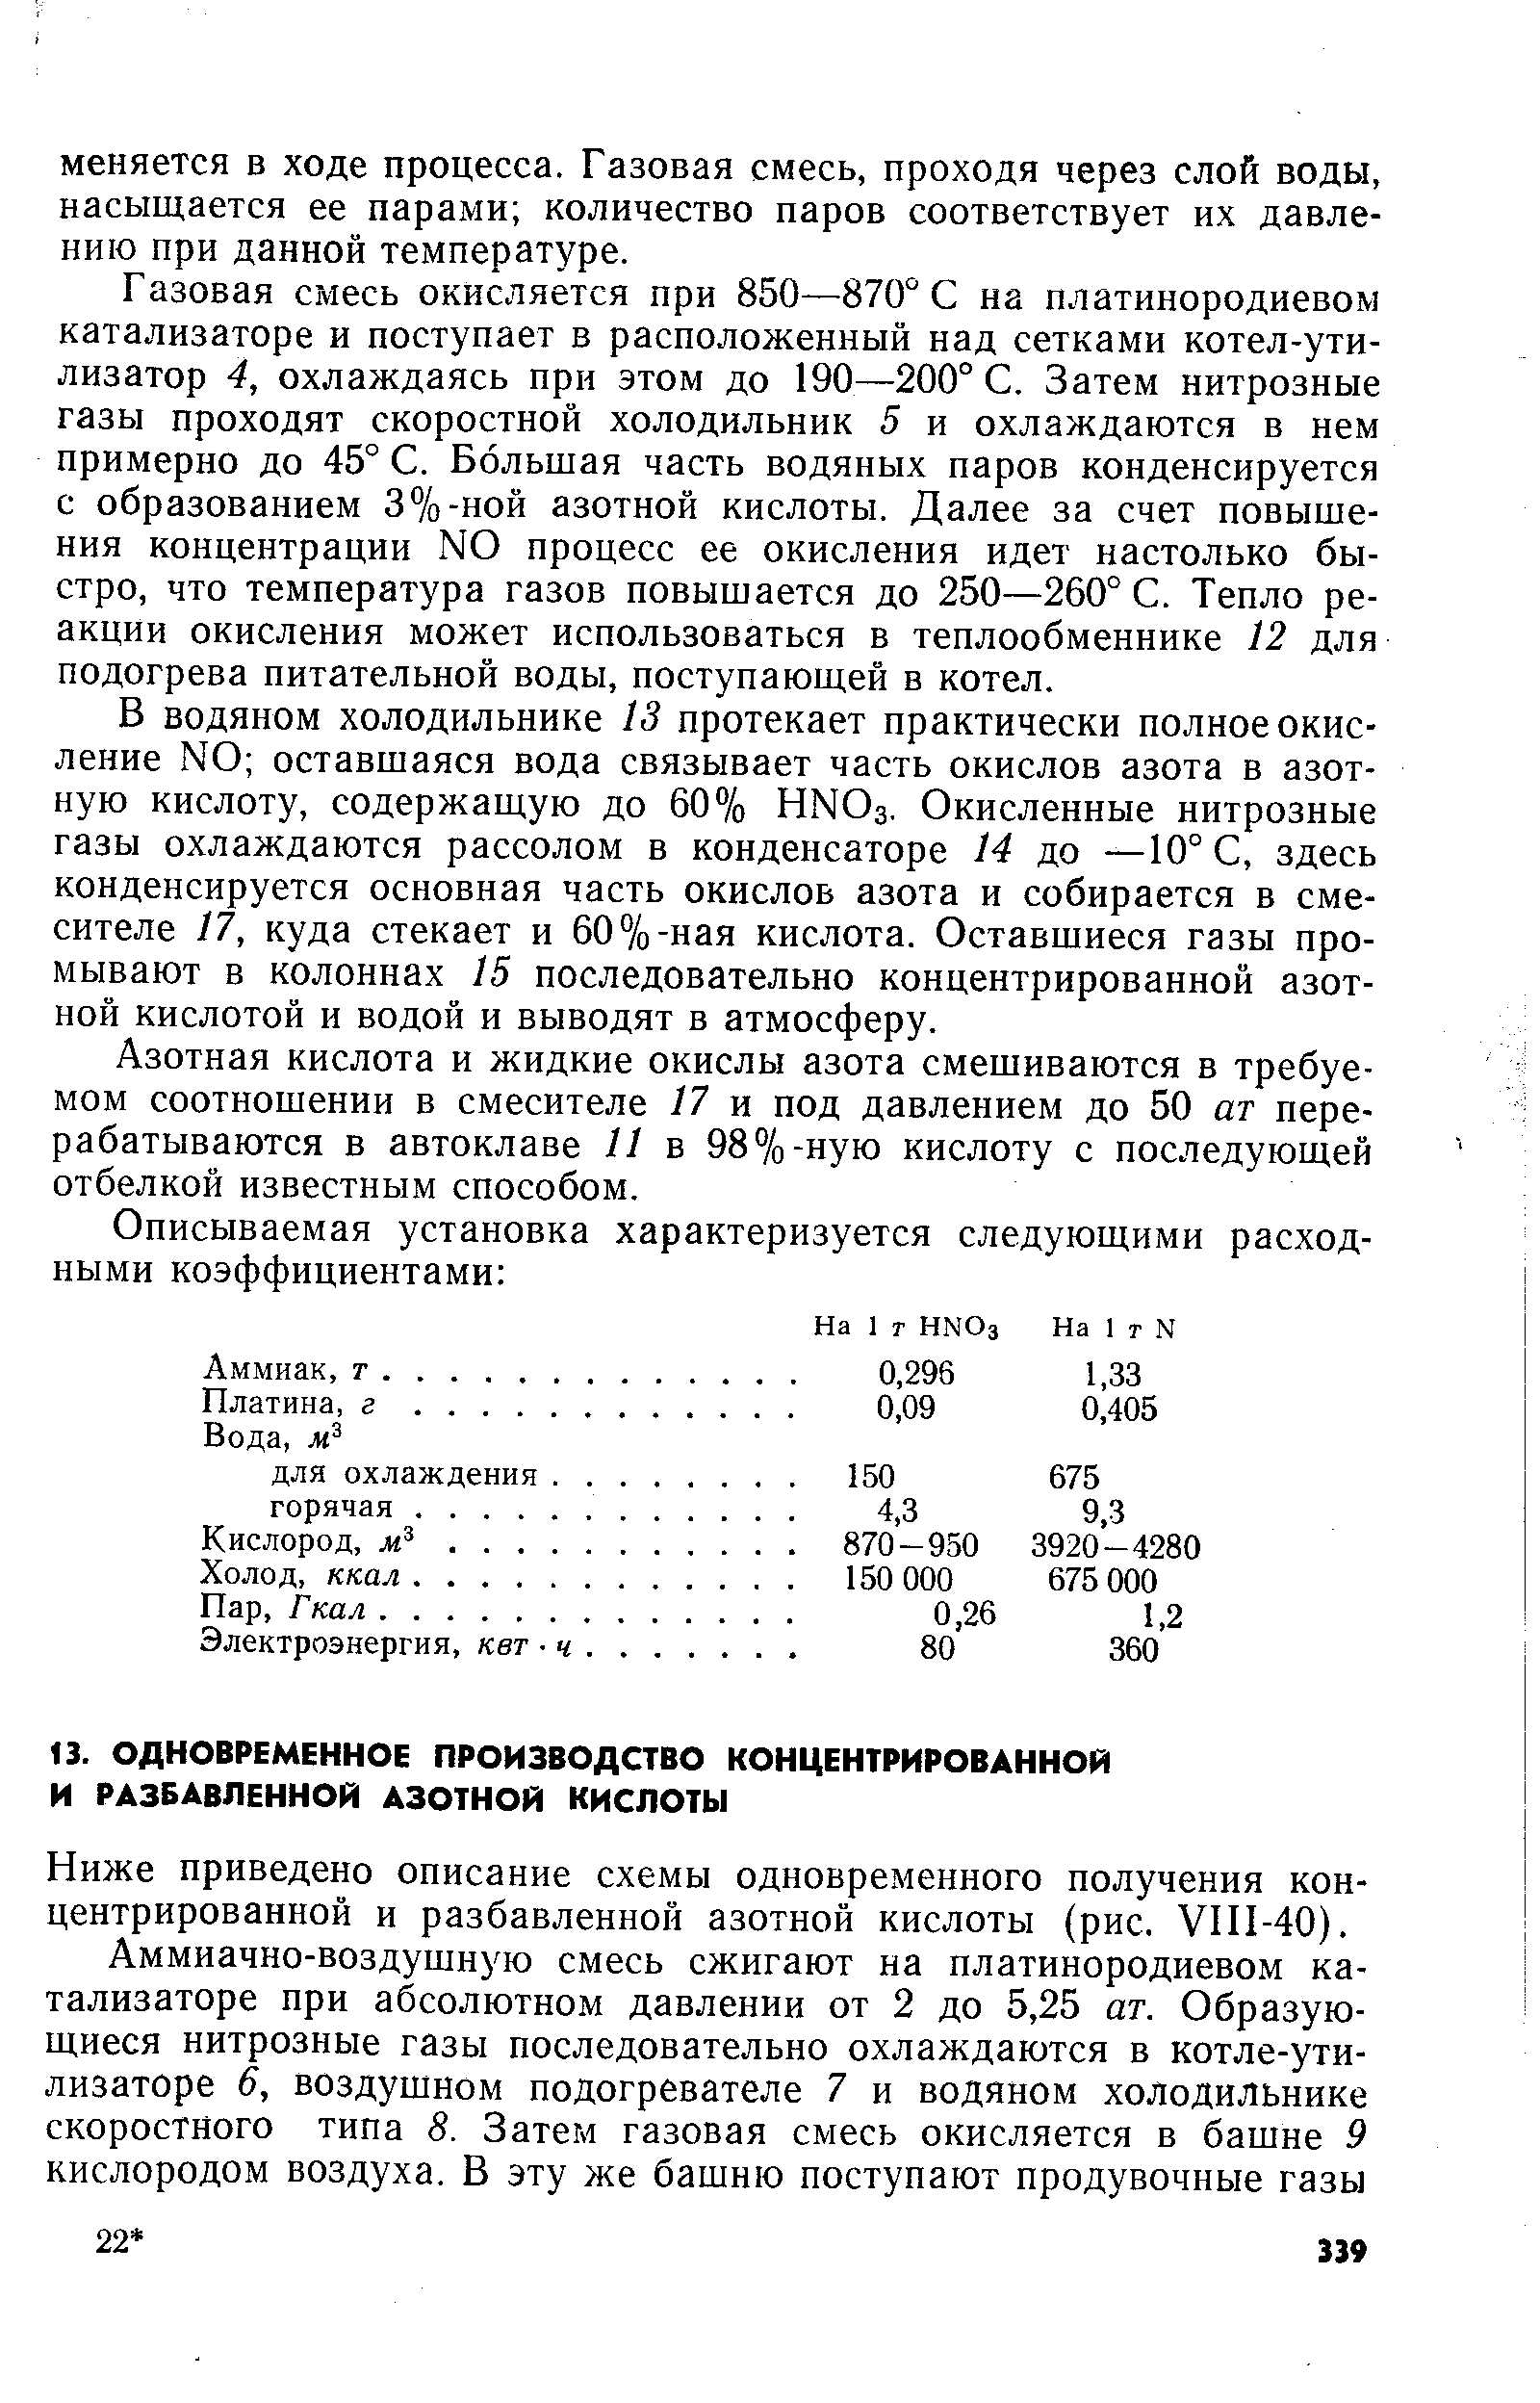 Ниже приведено описание схемы одновременного получения концентрированной и разбавленной азотной кислоты (рис. УП1-40).